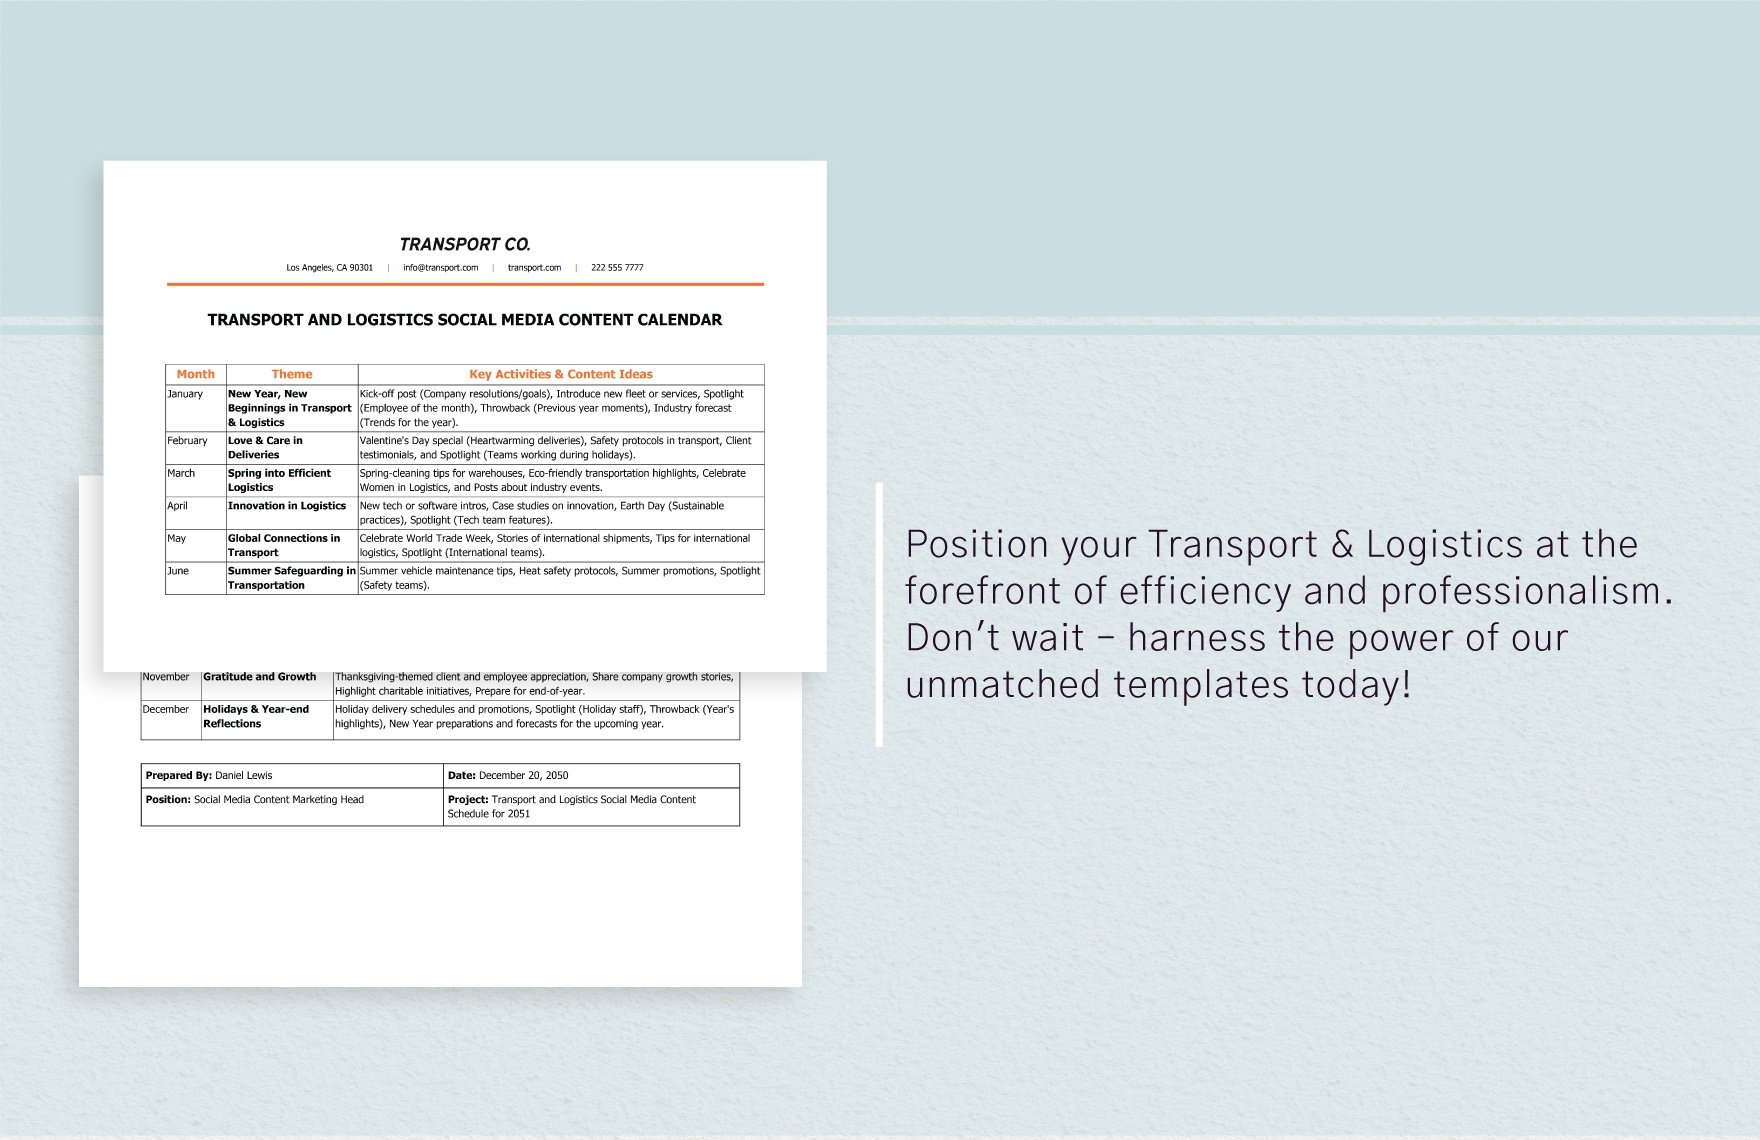 Transport and Logistics Social Media Content Calendar Template